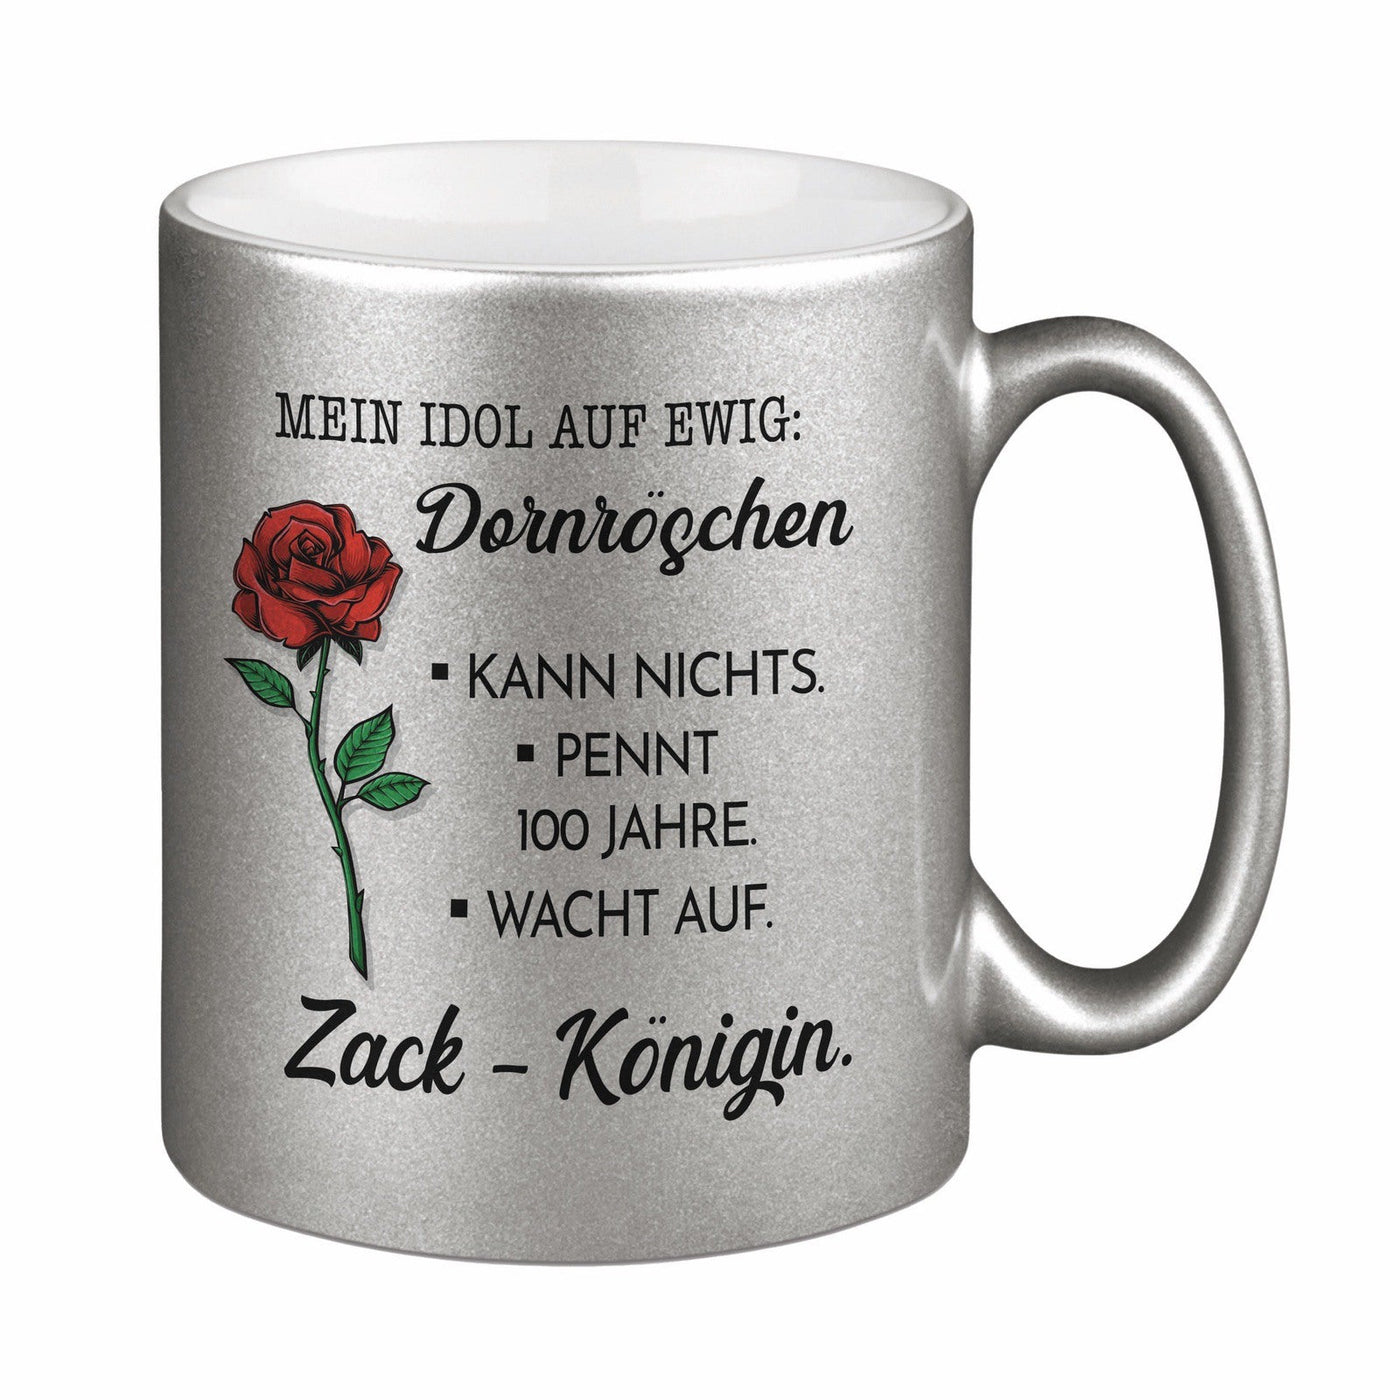 Bild: Tasse - Mein Idol auf ewig: Dornröschen - Metallictasse Geschenkidee